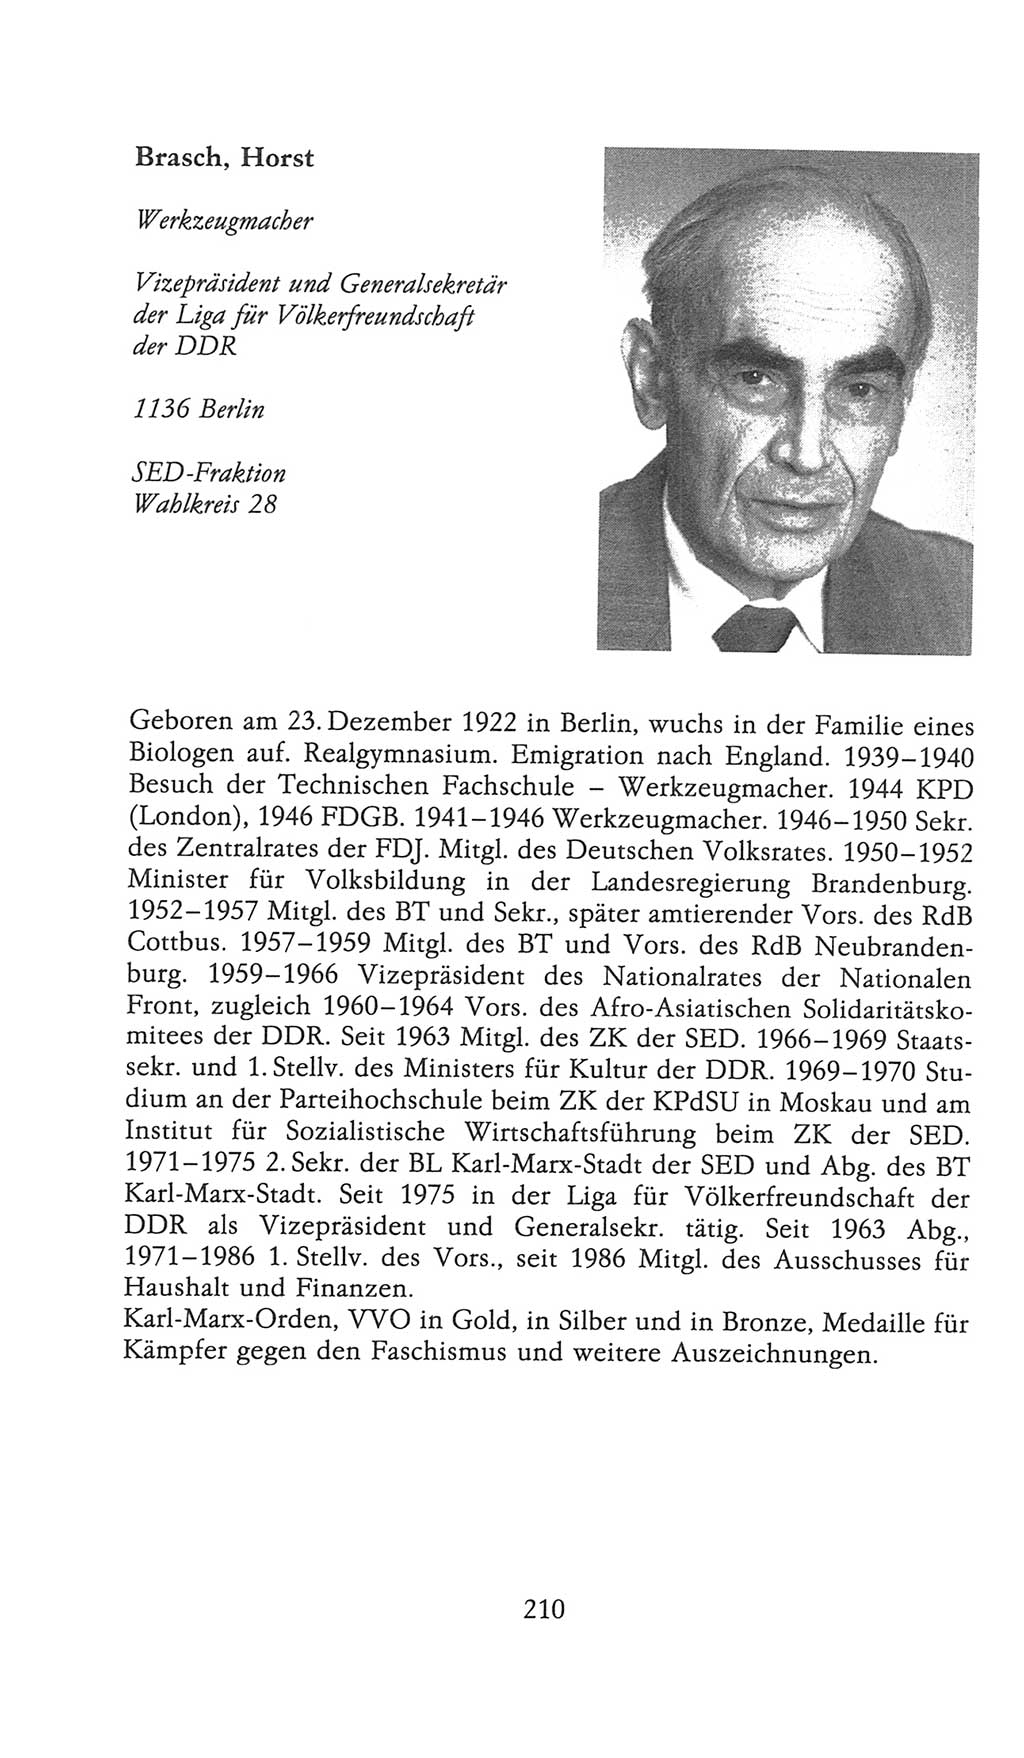 Volkskammer (VK) der Deutschen Demokratischen Republik (DDR), 9. Wahlperiode 1986-1990, Seite 210 (VK. DDR 9. WP. 1986-1990, S. 210)